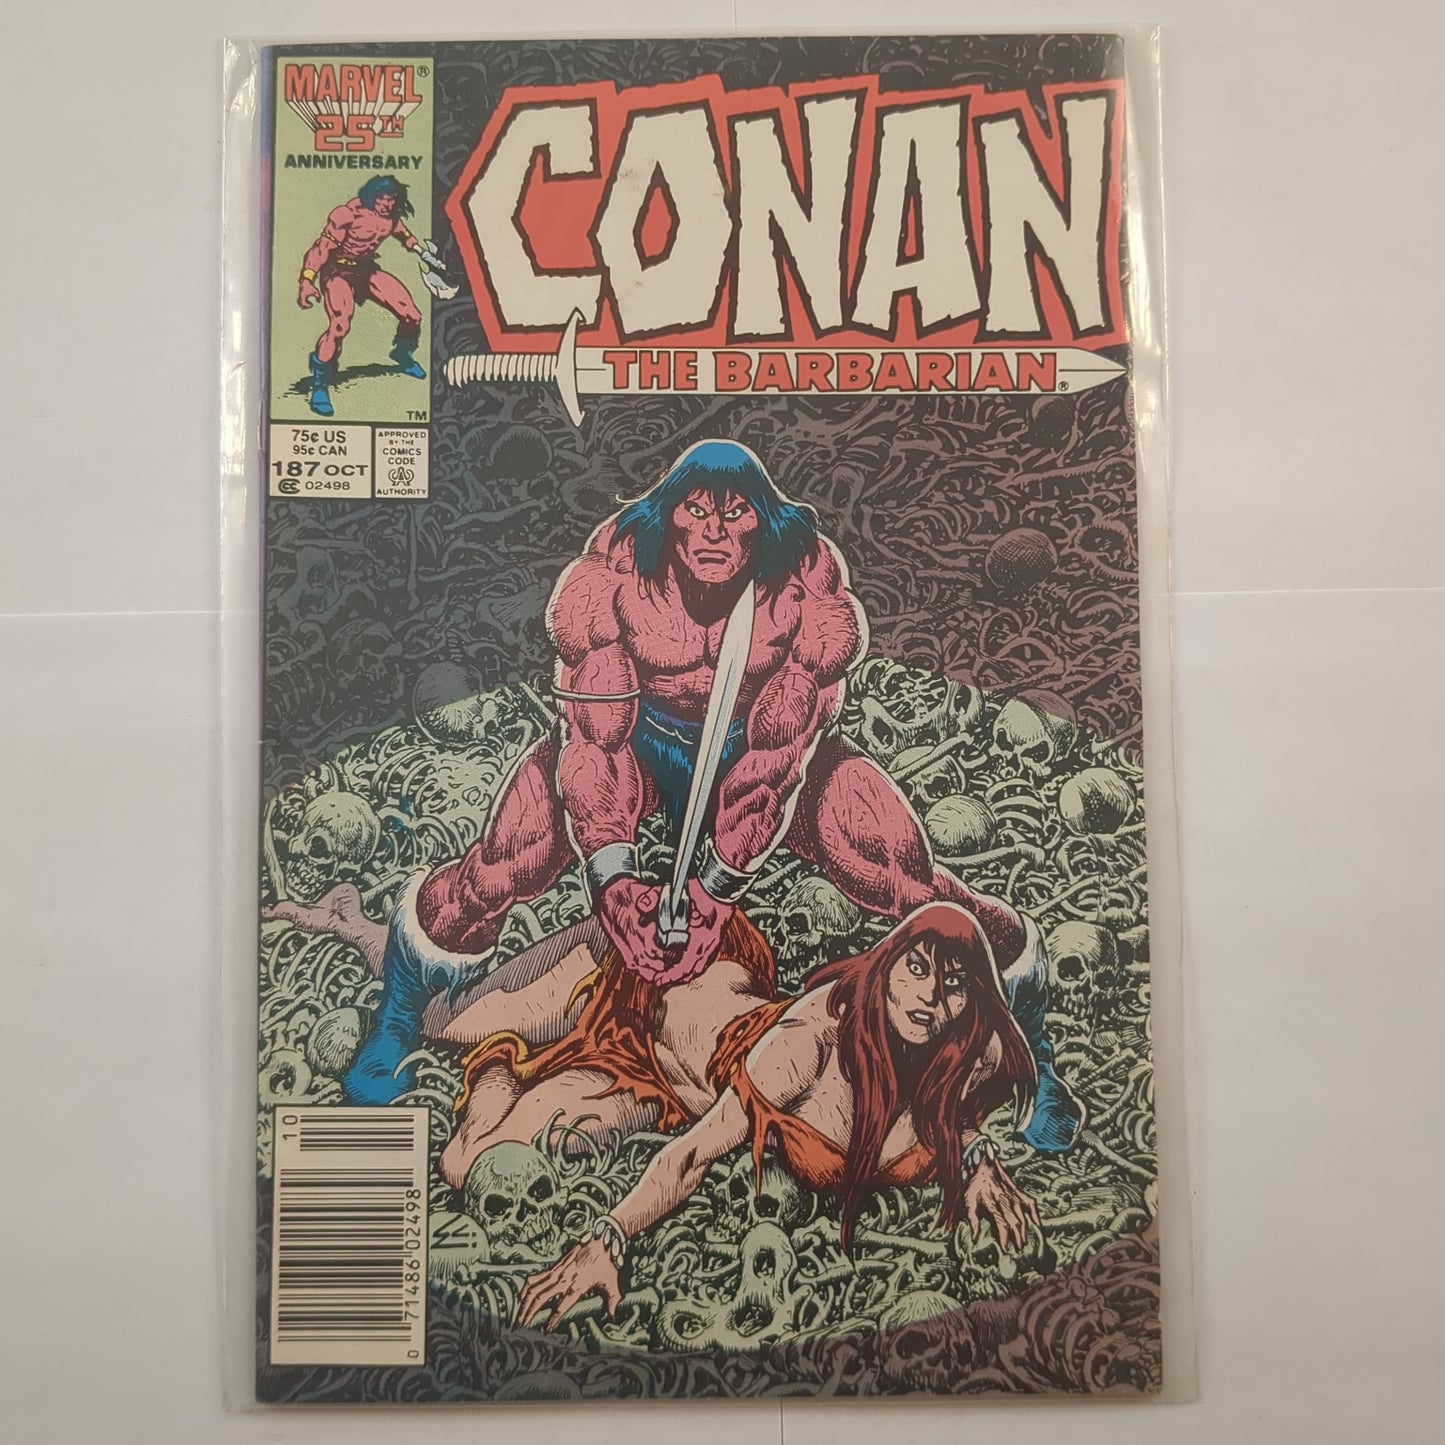 Conan el bárbaro (1970)